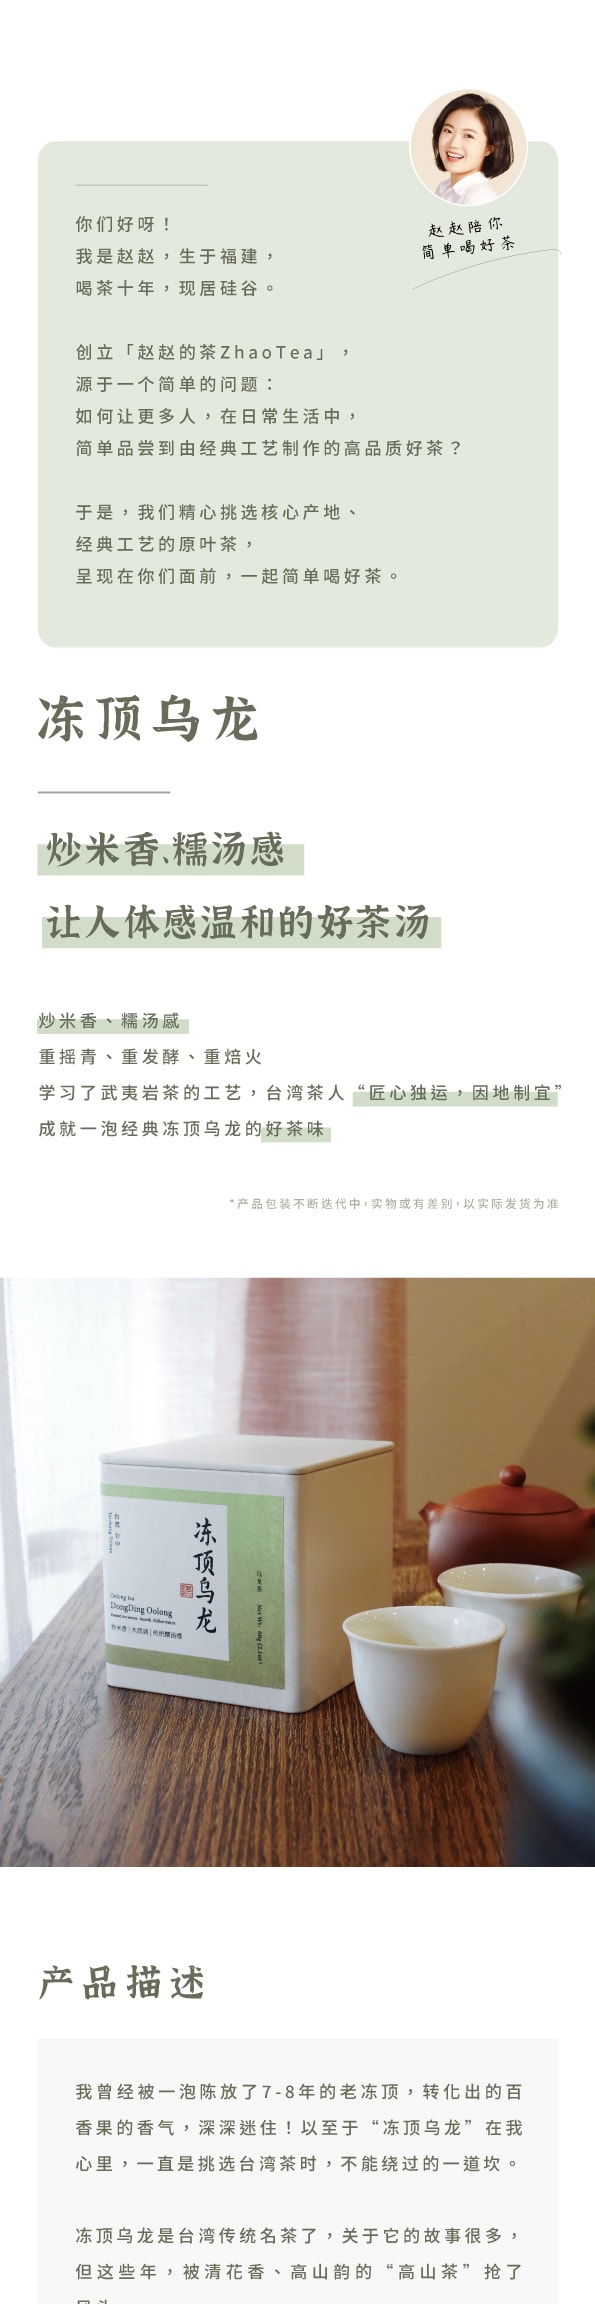 美国 赵赵的茶 ZhaoTea 冻顶乌龙 台湾台中 经典乌龙茶 炒米香 汤感温和 60g